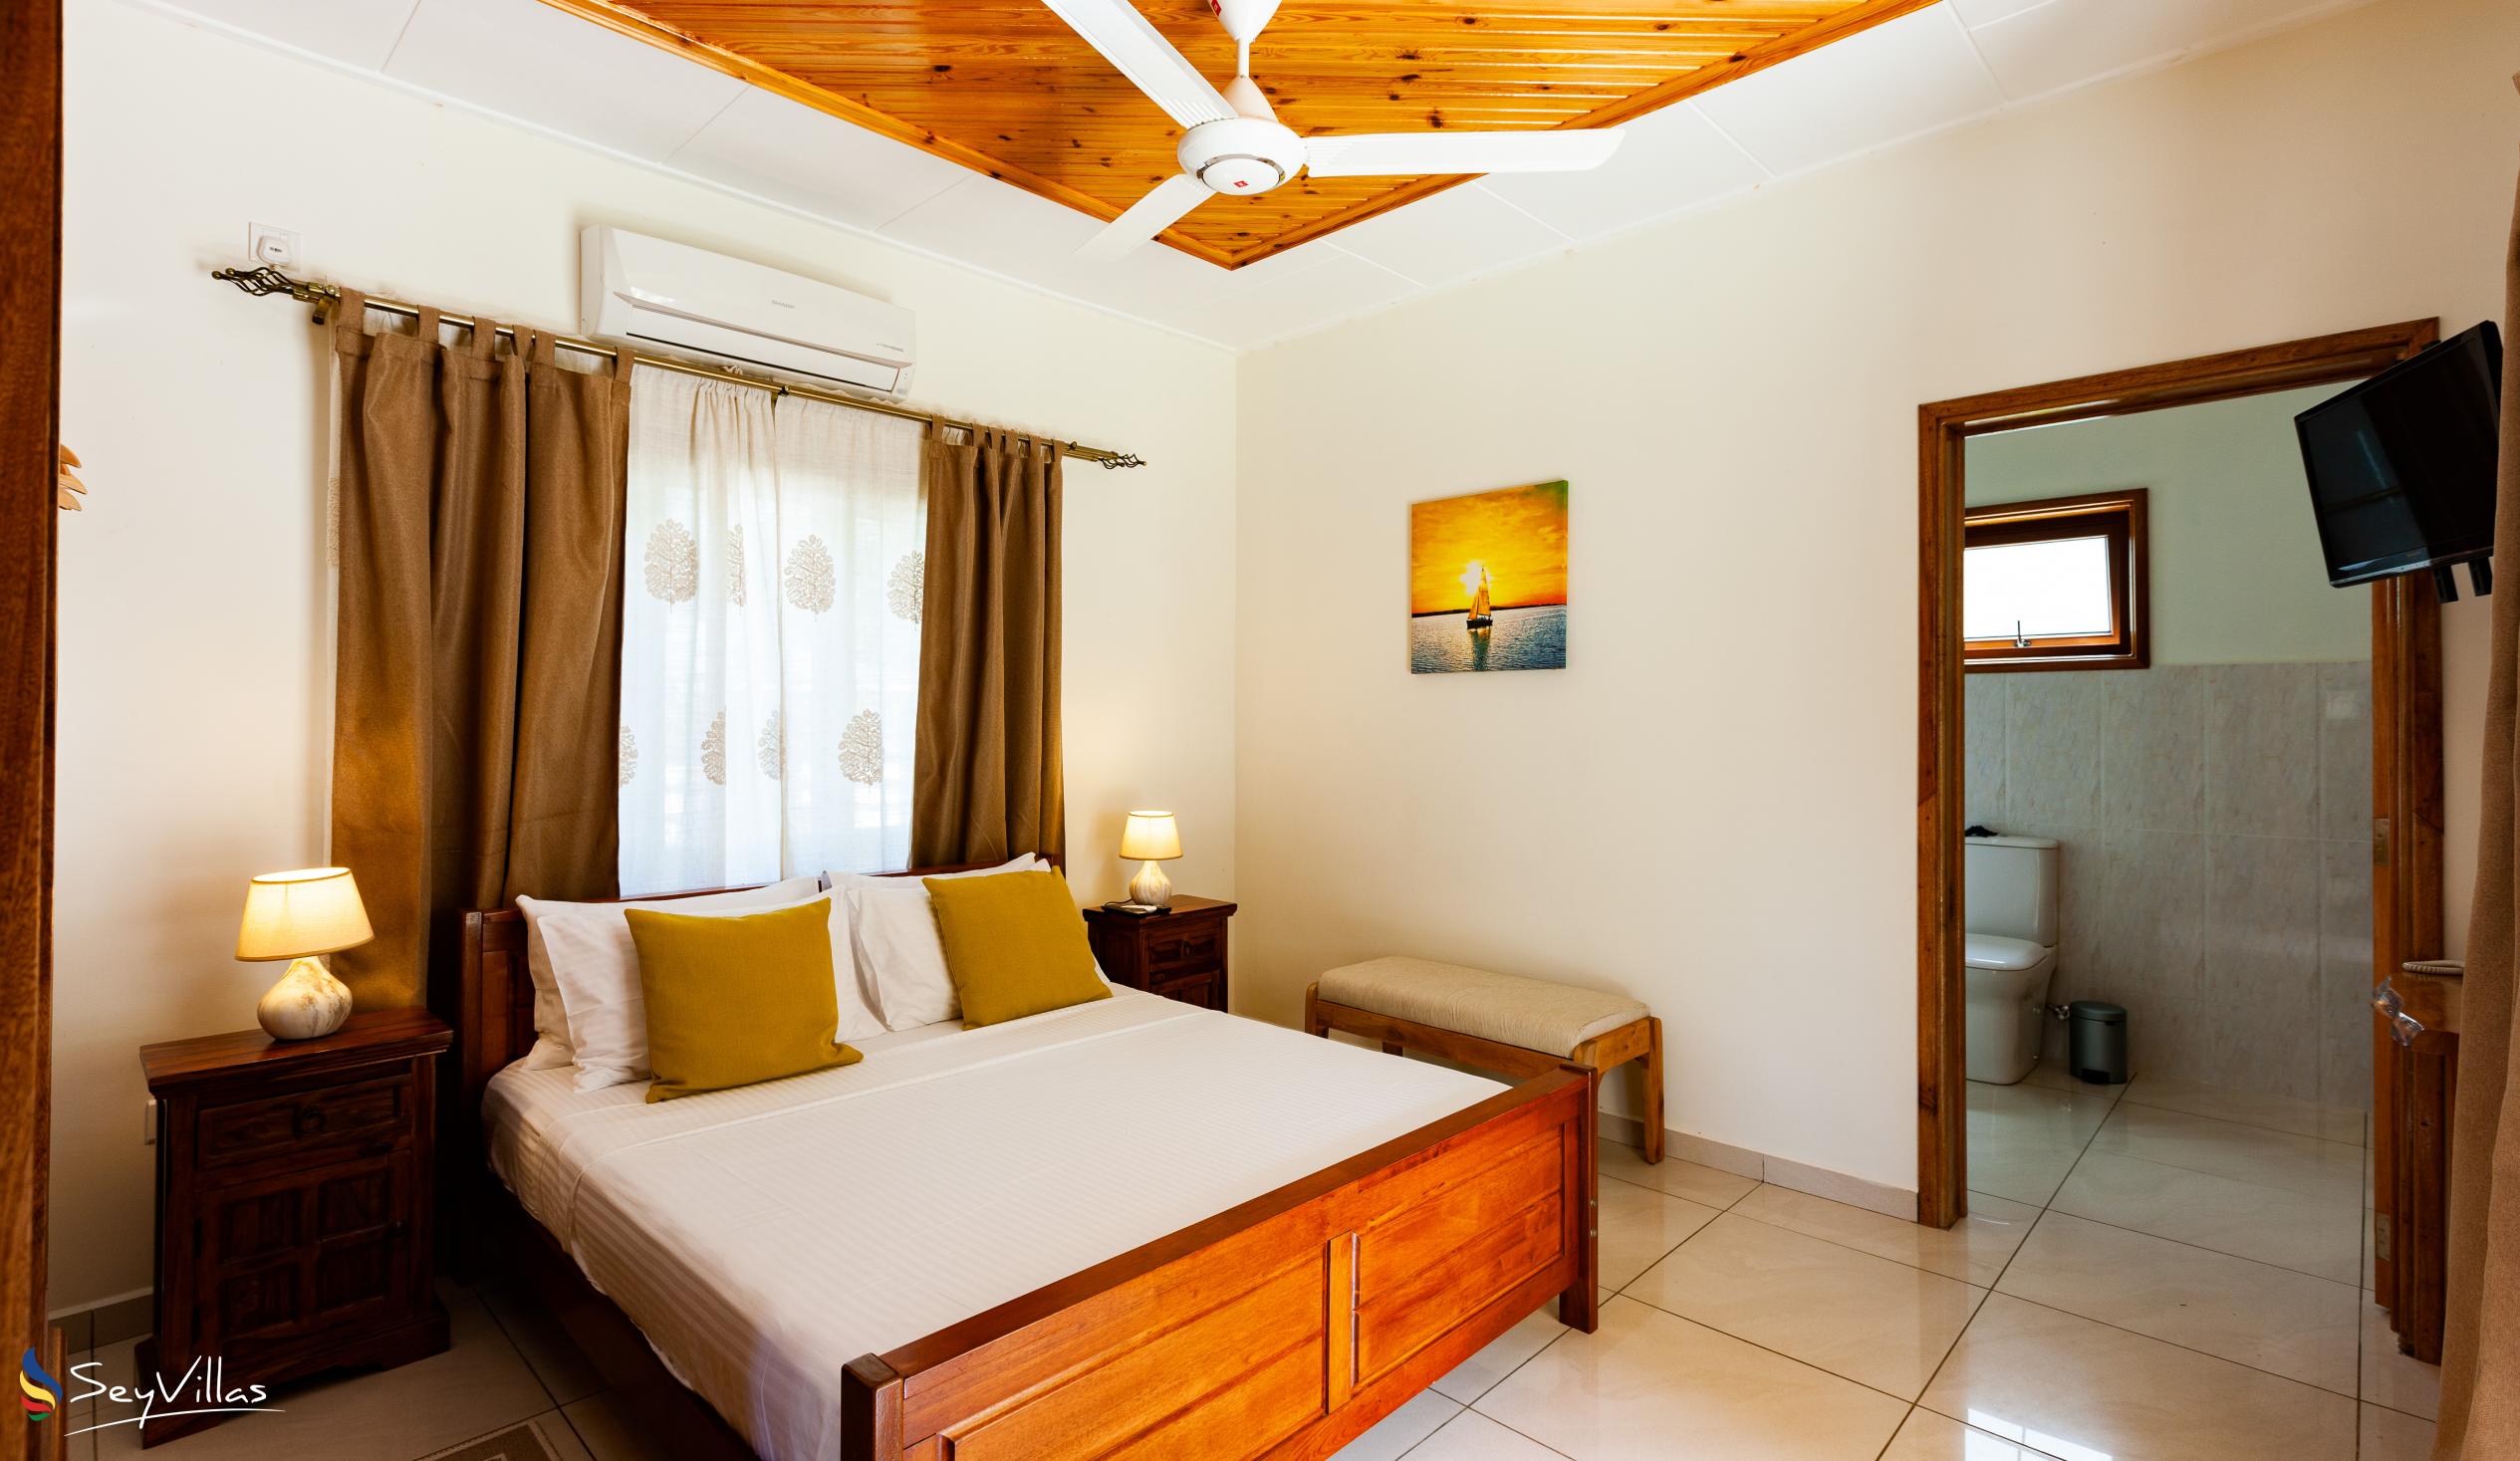 Photo 24: Maison Ed-Elle - 1-Bedroom Apartment - La Digue (Seychelles)